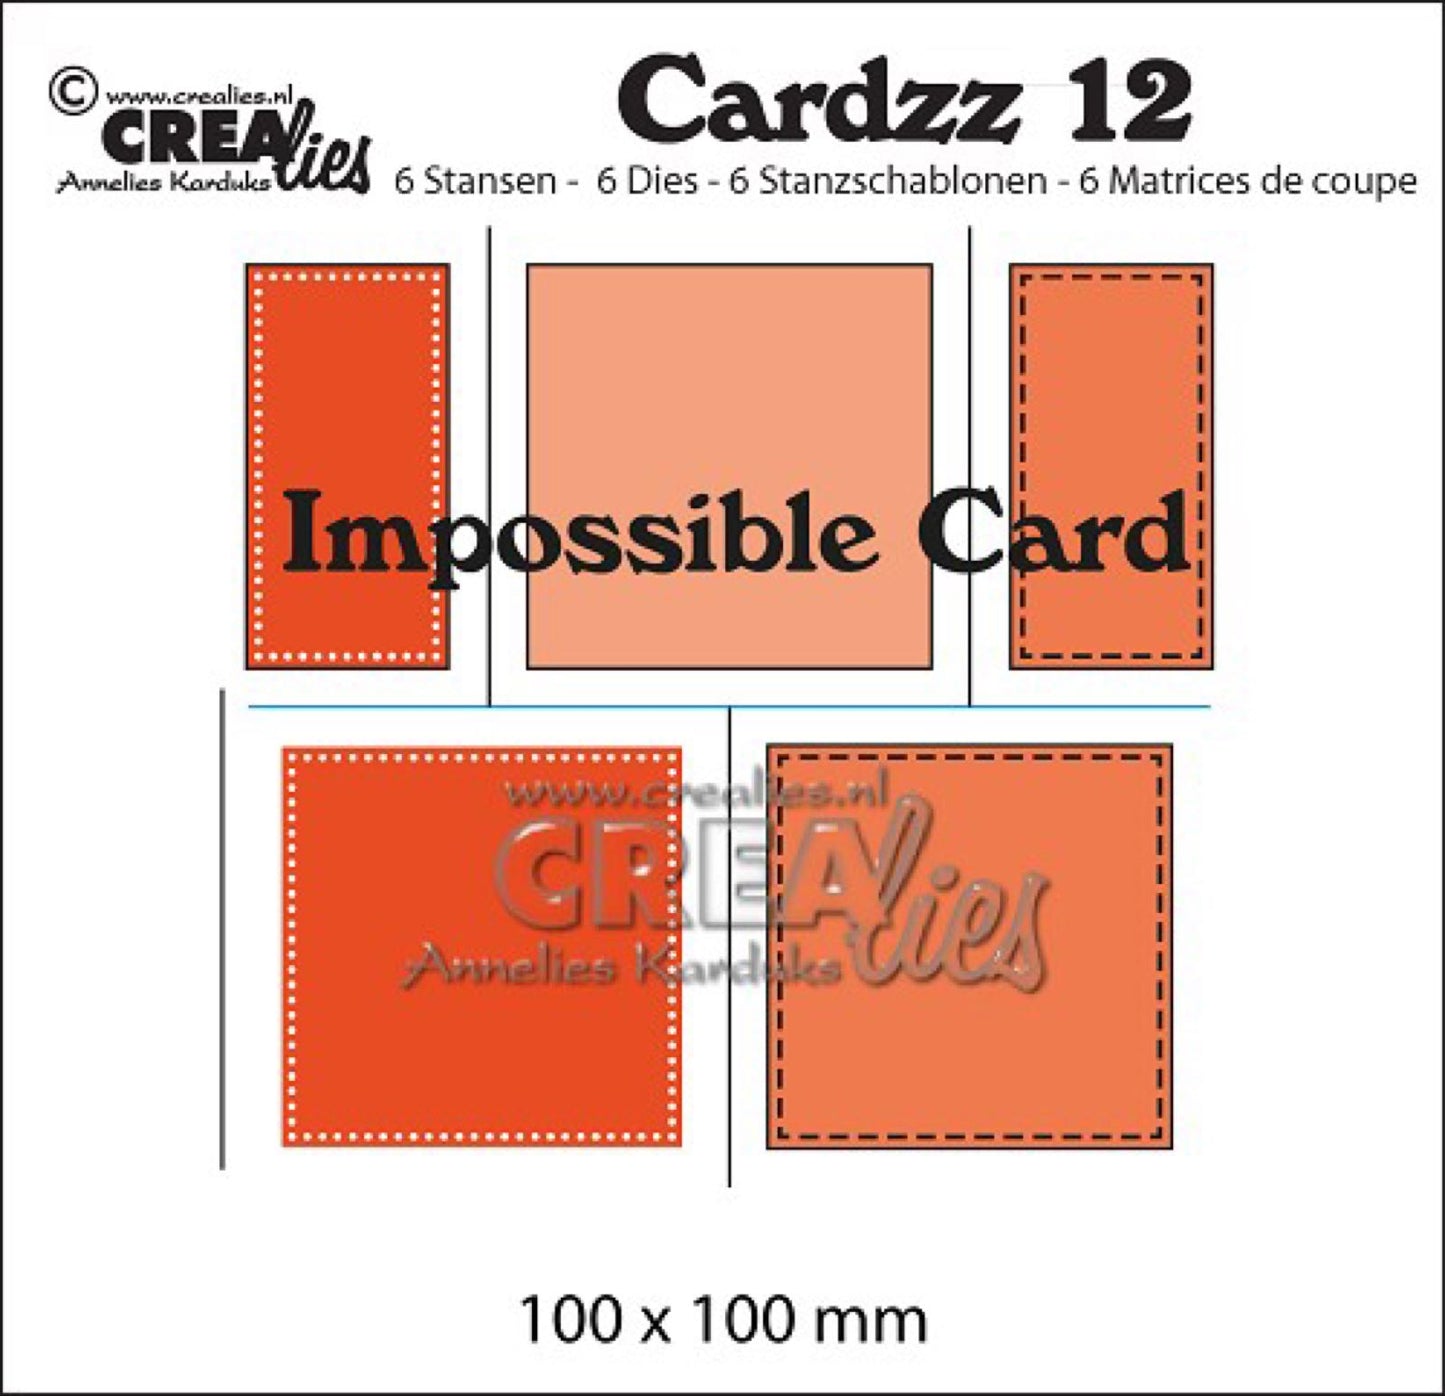 Crealies Cardzz stansen no. 12, Impossible card